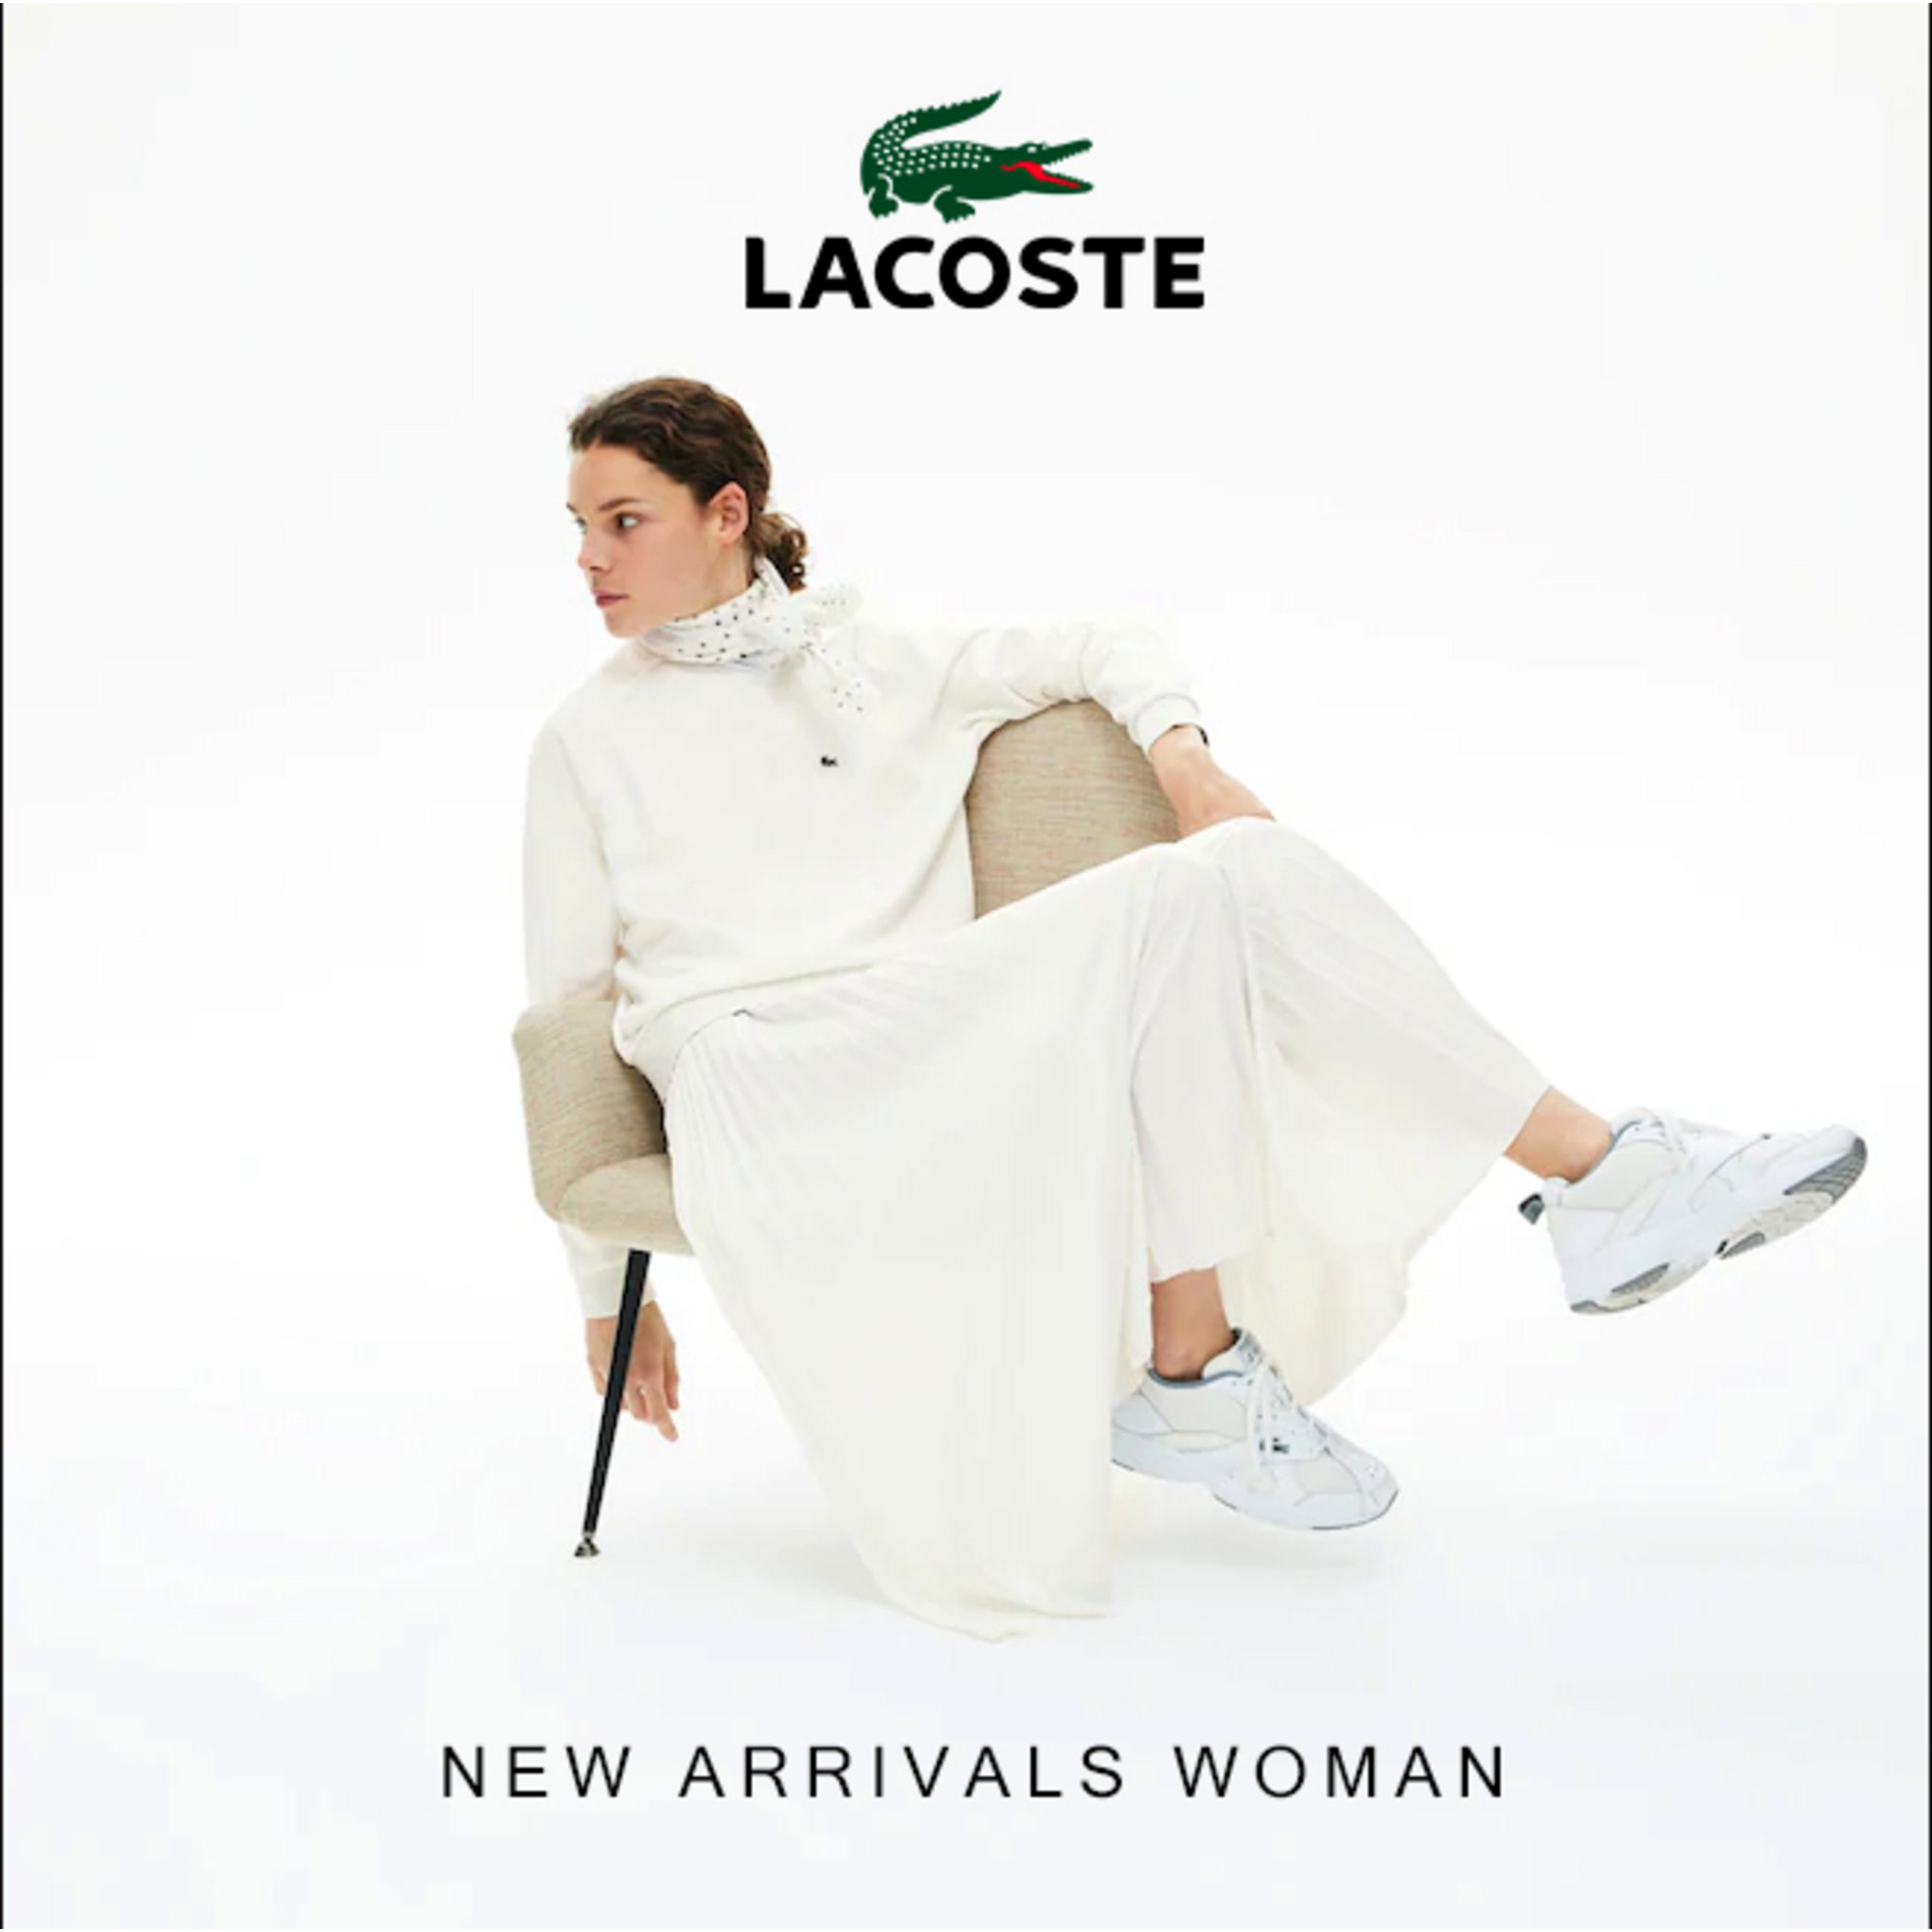 1-Nouveautés Lacoste Catalogue Septembre 2020